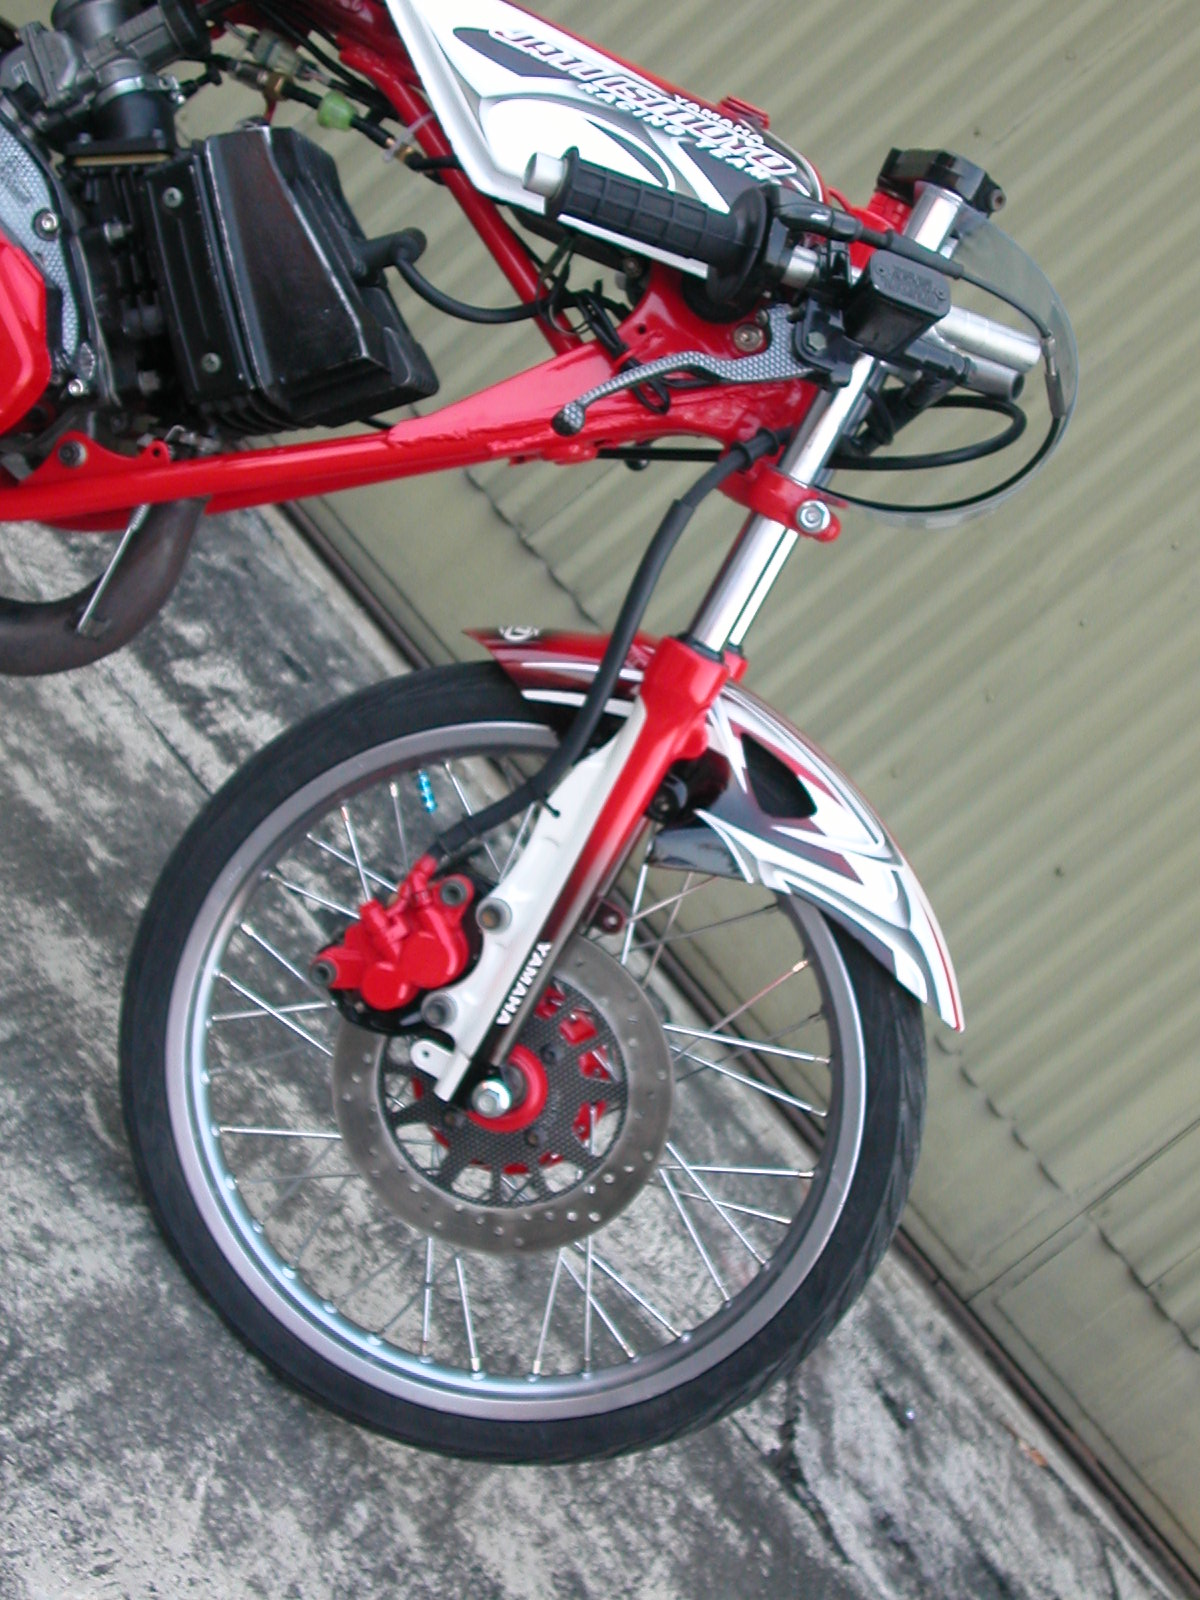 yamaha rx 135 sfondi gratis,veicolo terrestre,veicolo,ruota di bicicletta,pneumatico per bicicletta,bordo